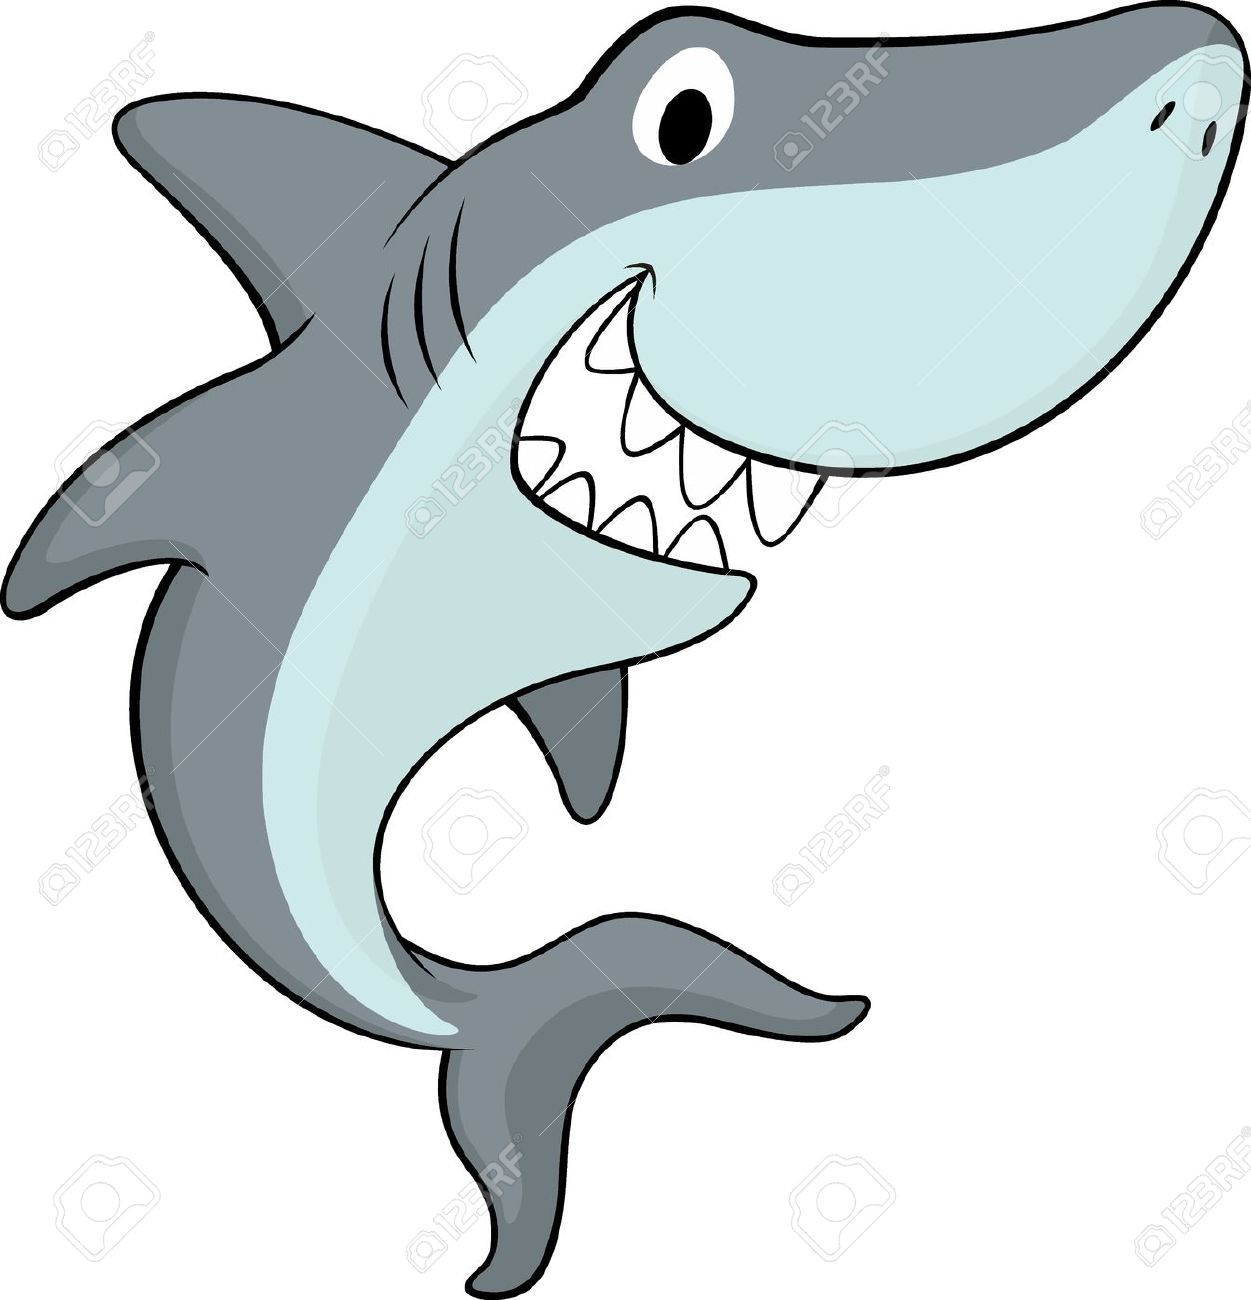 shark: vector illustration of friendly shark isolated on white background Illustration